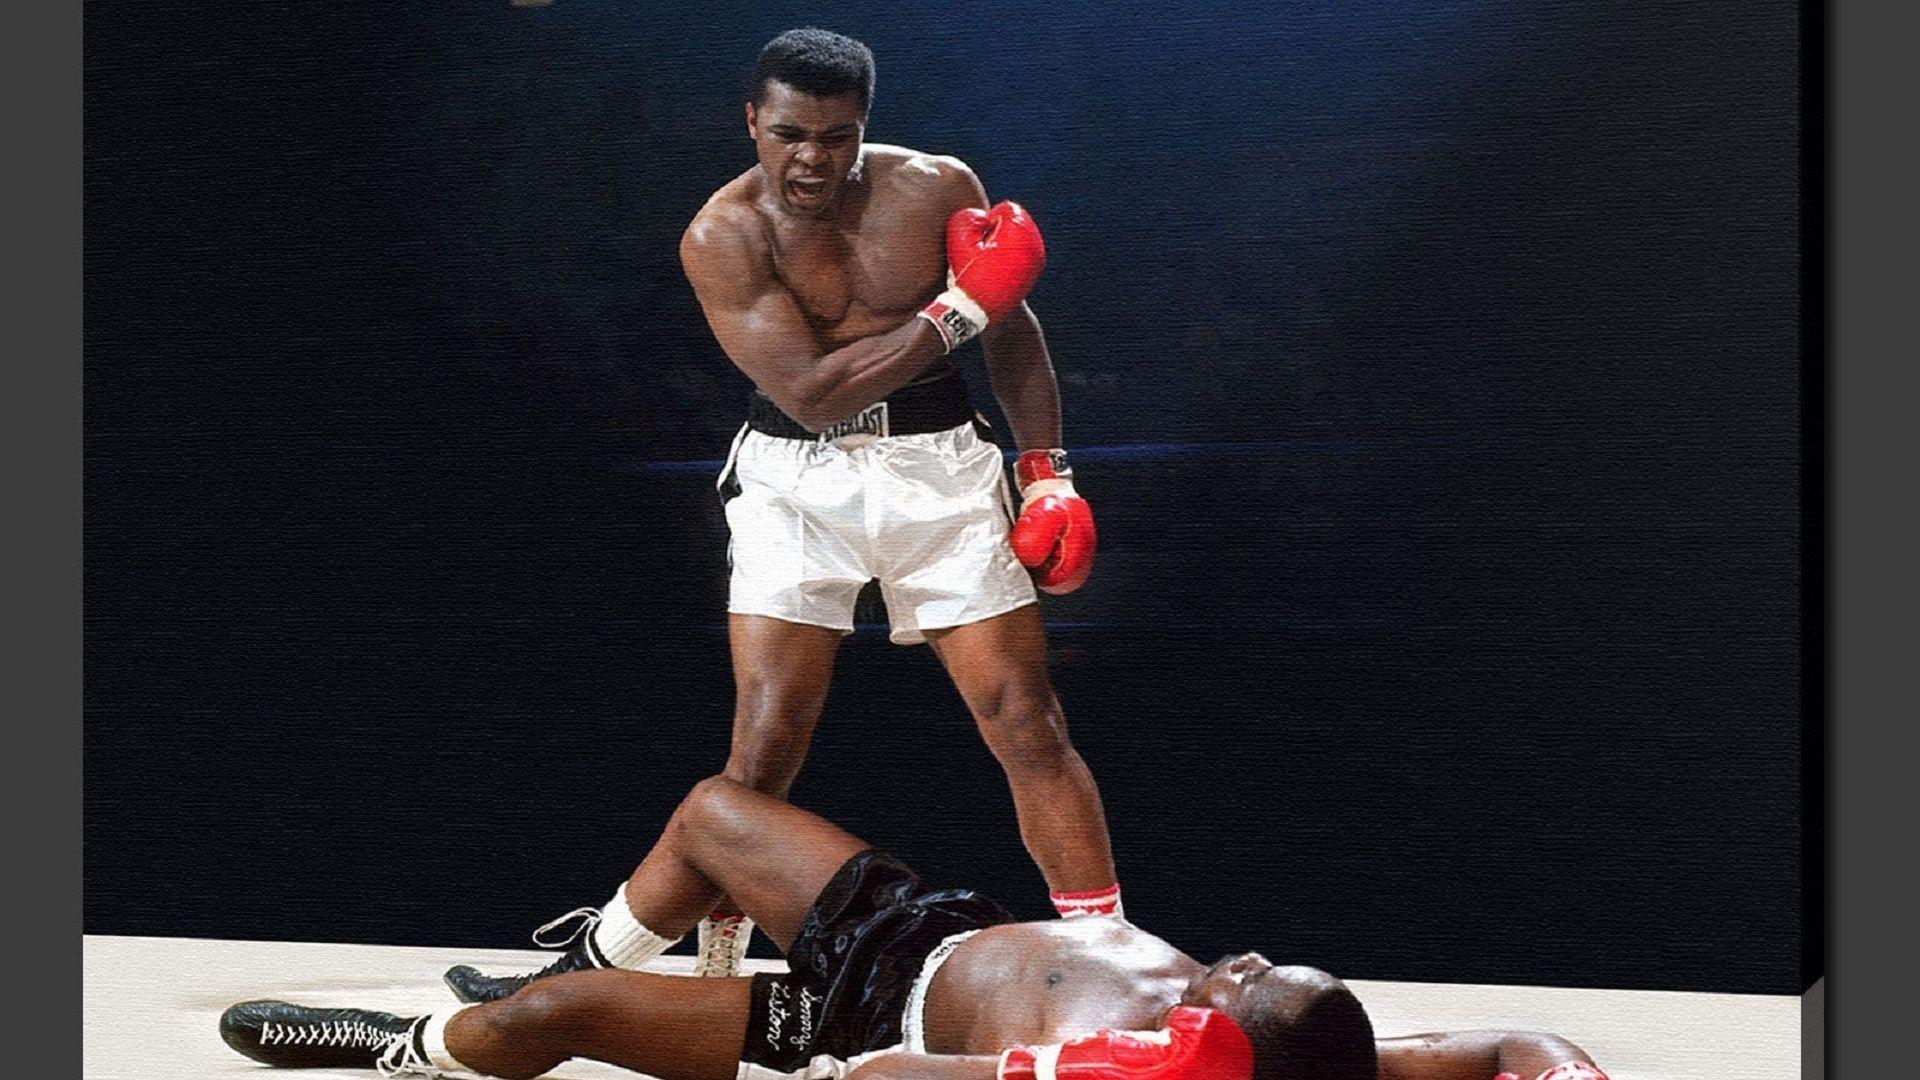 Muhammad Ali Vs Sonny Liston Wallpaper